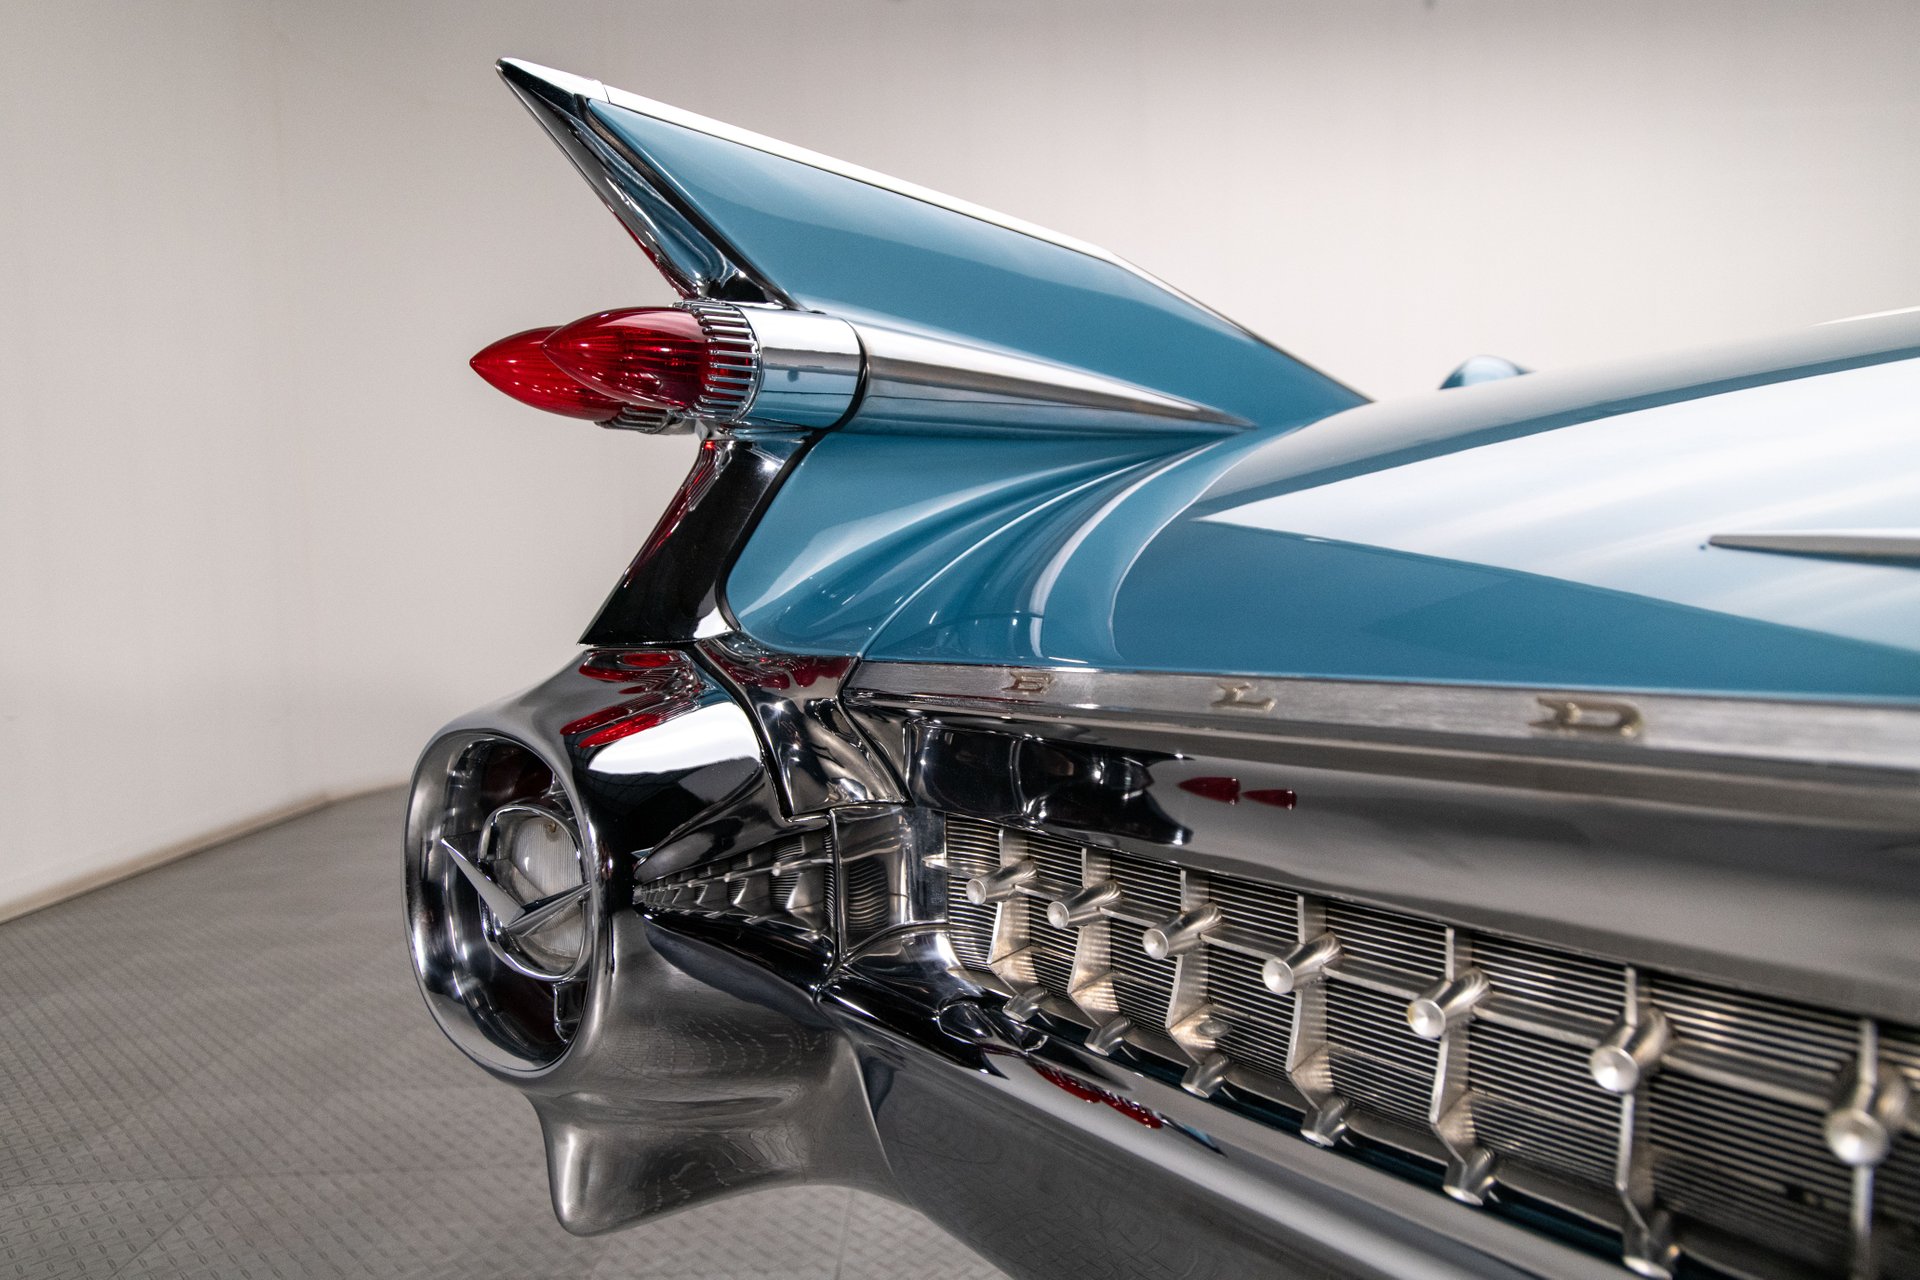 For Sale 1959 Cadillac Eldorado